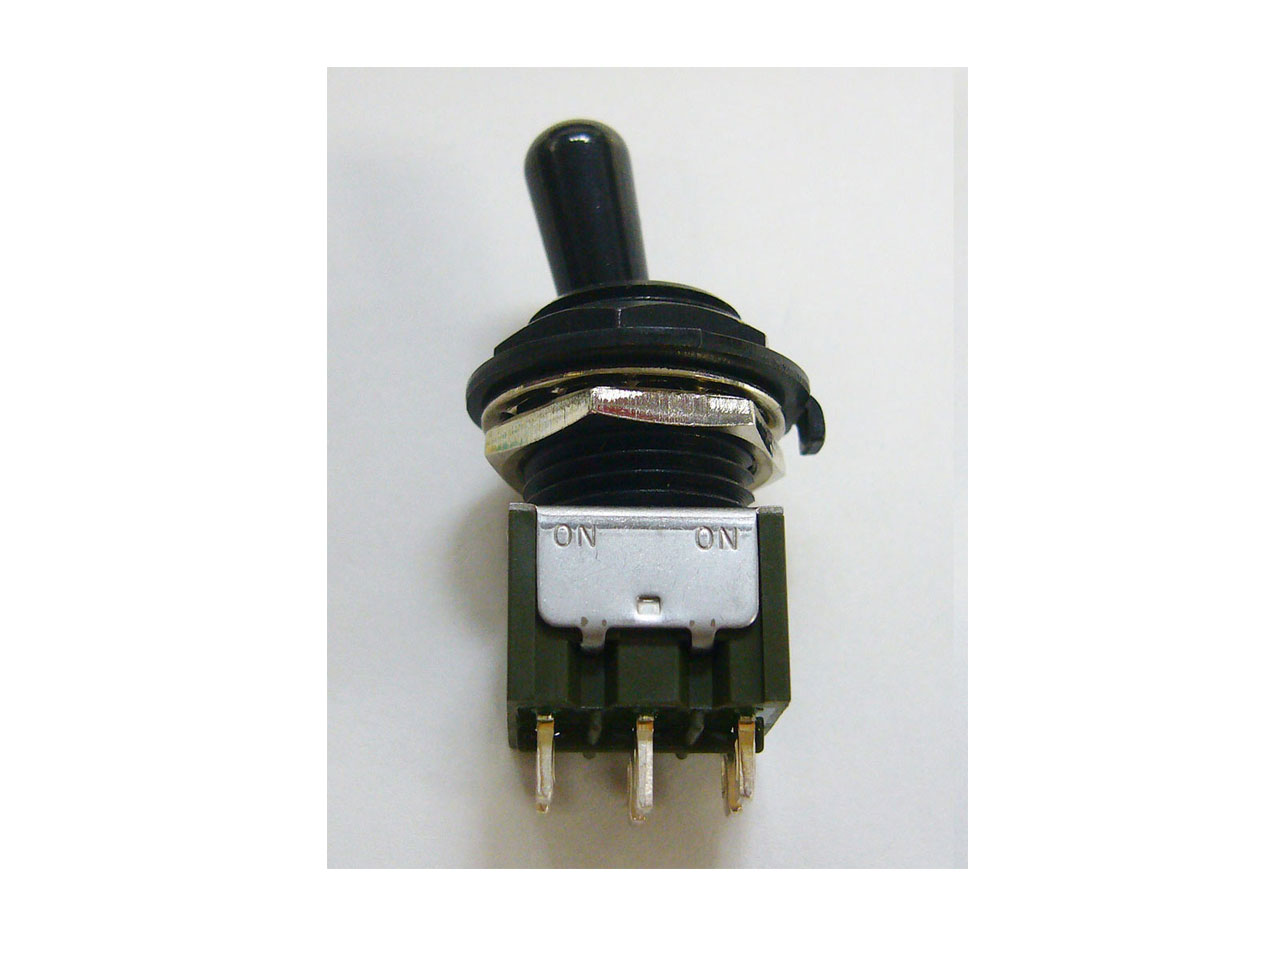 ESP(イーエスピー) Mini Toggle Switch 6pin 2ON / Black Nickel (ミニトグルスイッチ)